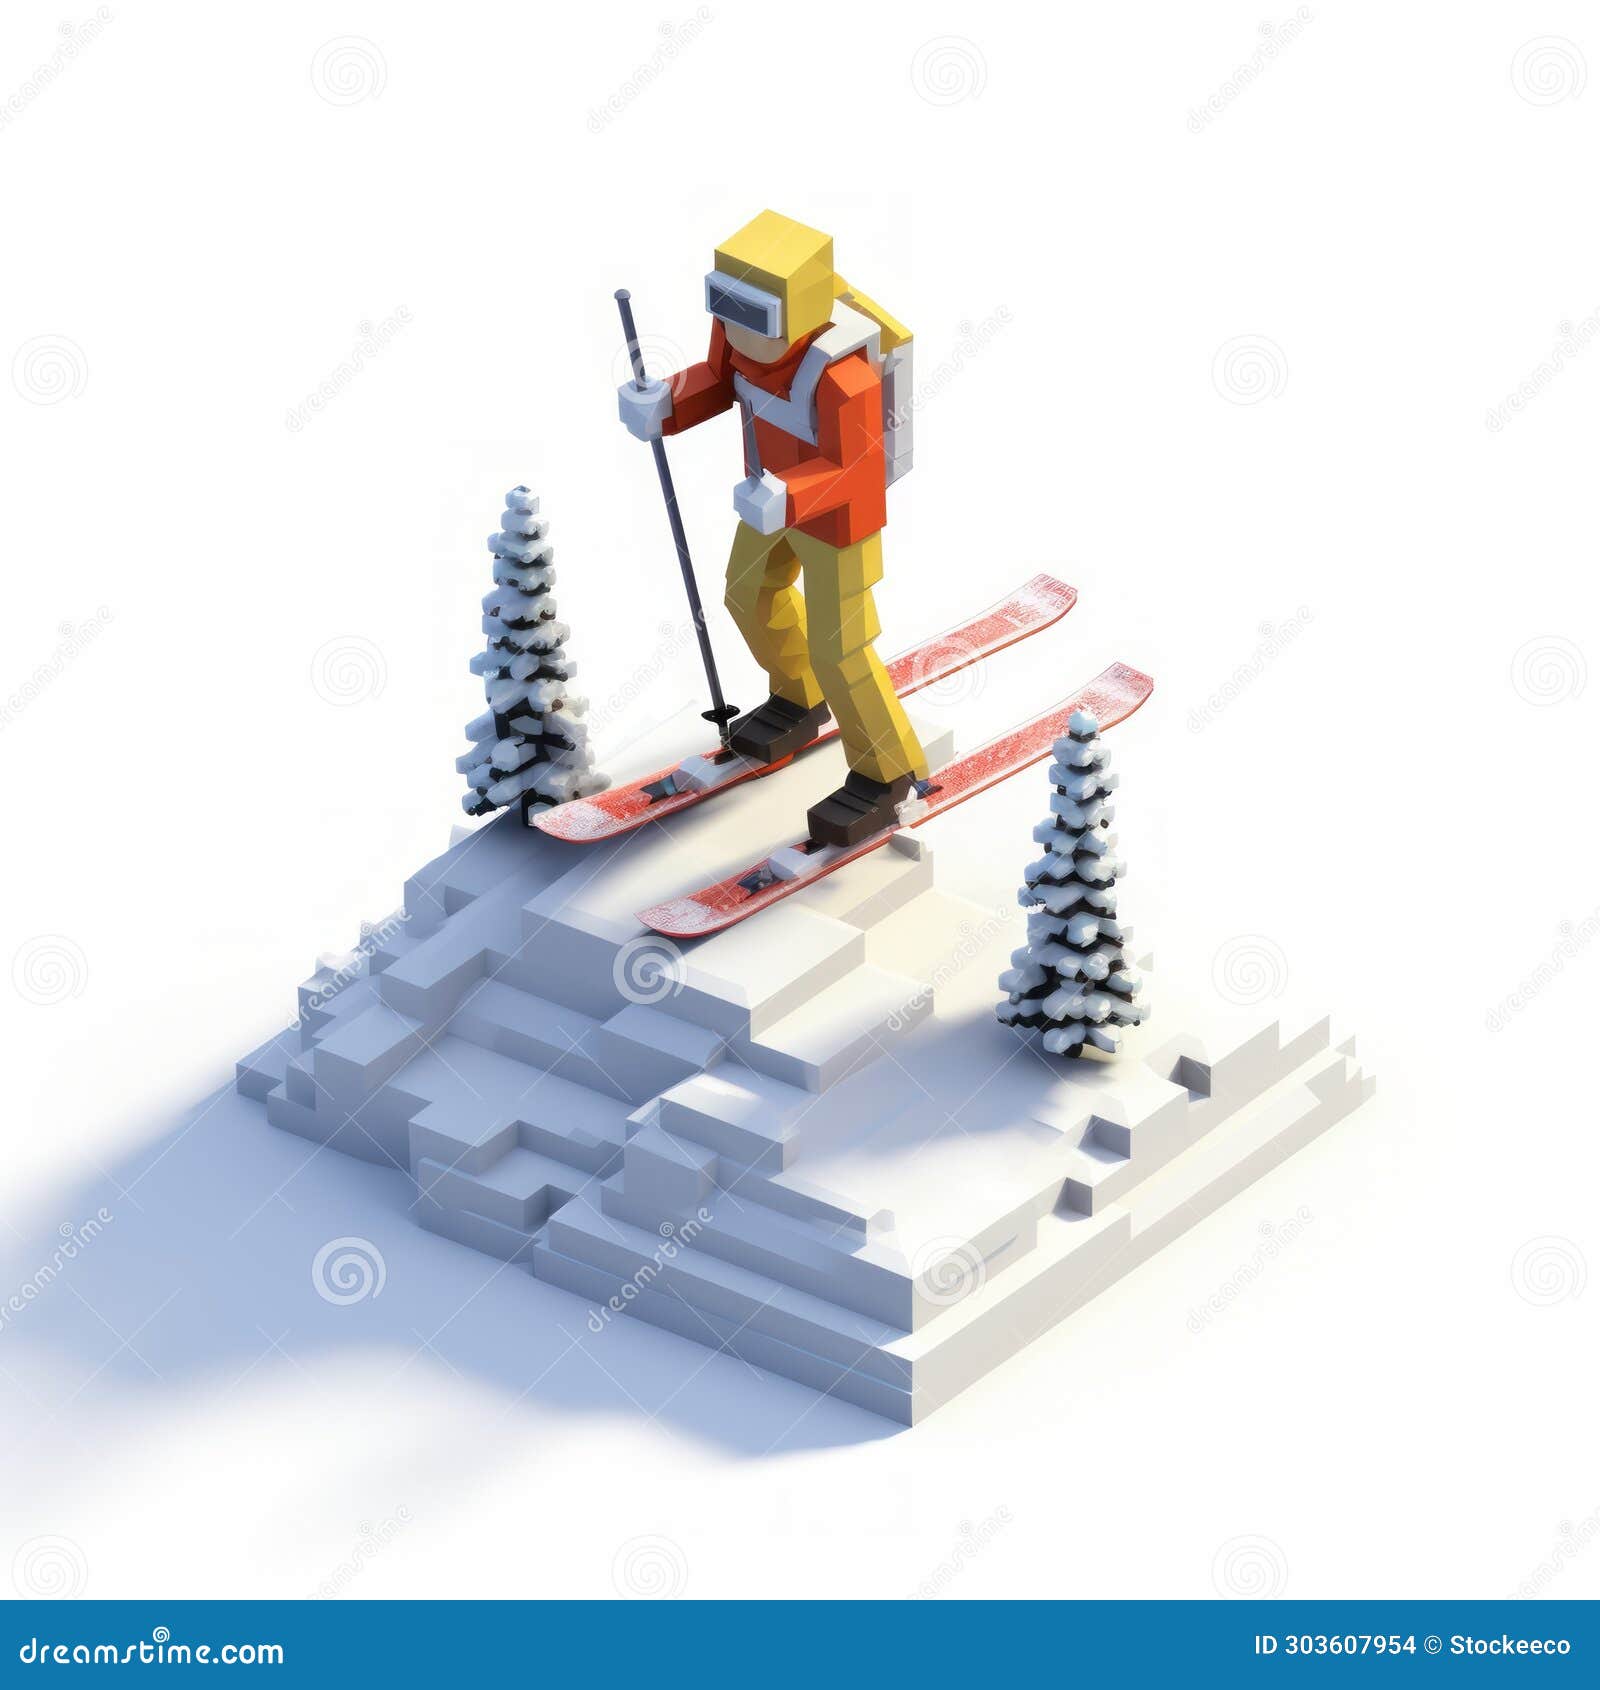 Pixelated Skiing Cartoon: 3d 8-bit Figure Carving through Snow Stock ...